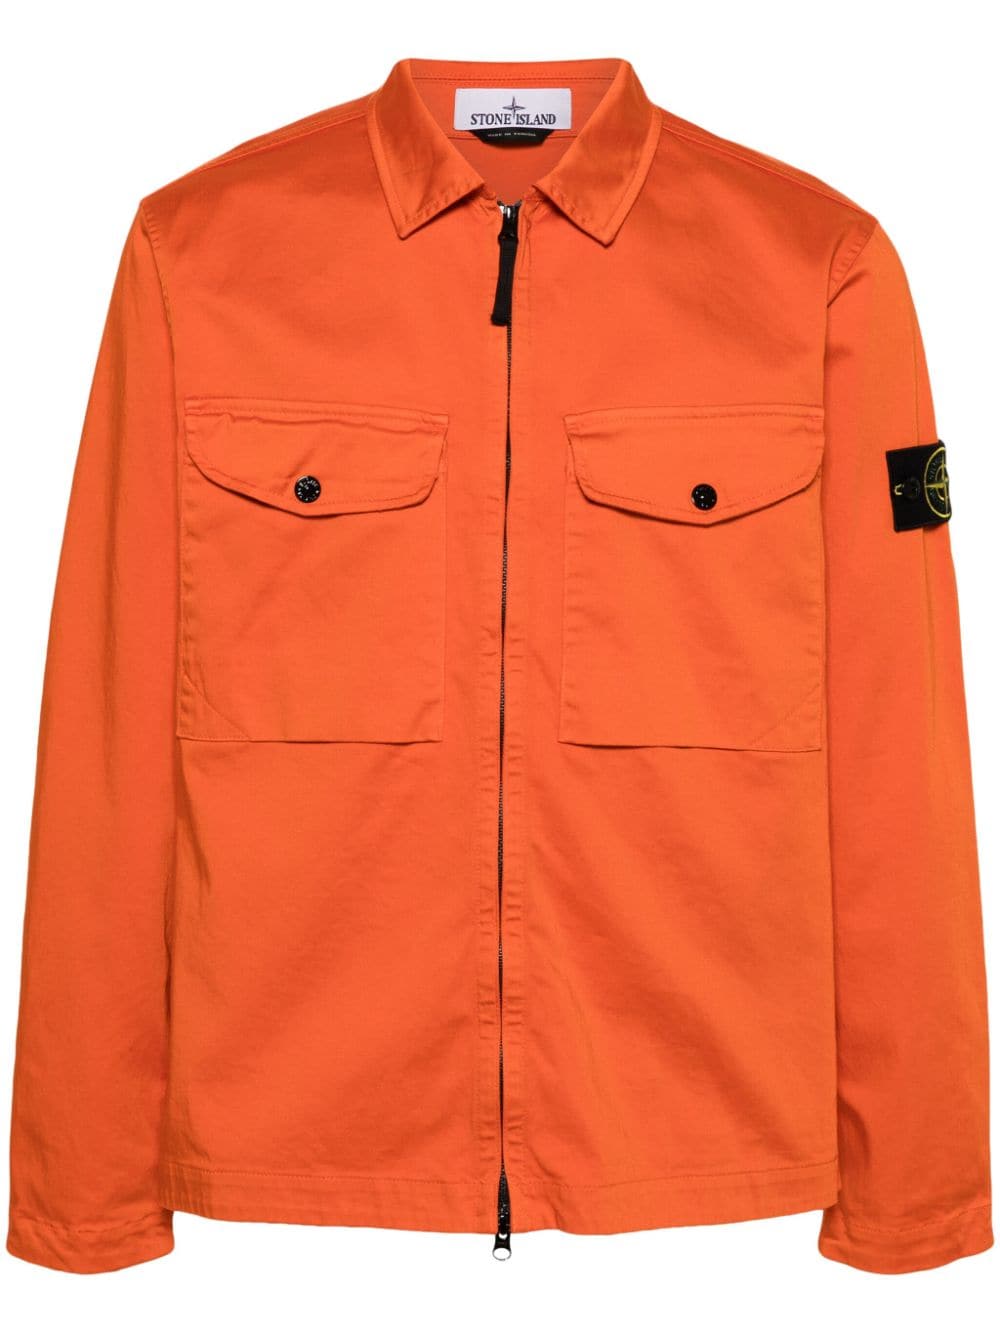 Stone Island Compass cotton shirt jacket - Orange von Stone Island